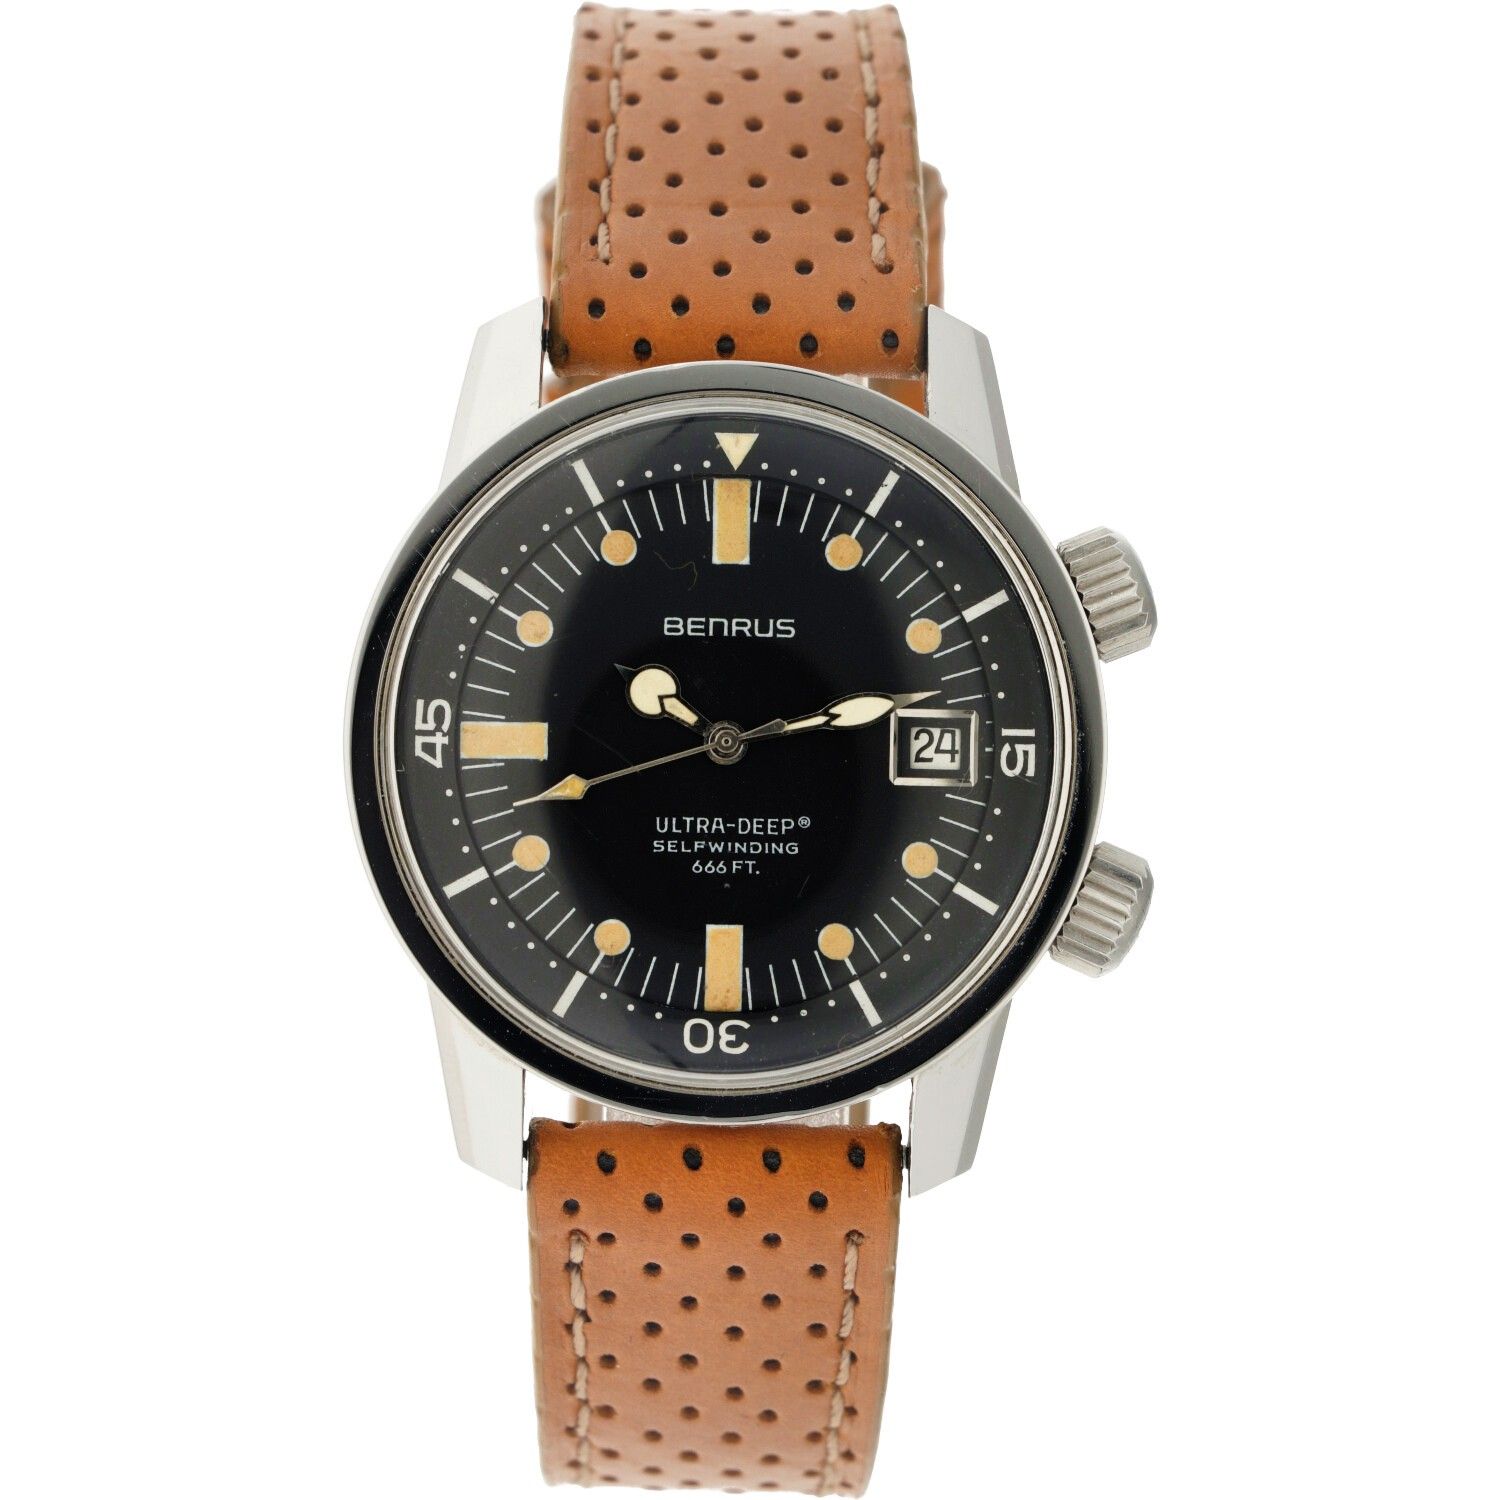 Benrus Ultra-Deep 666 FT. 6089 - Men's watch - approx. 1960. Gehäuse: Stahl - Ar&hellip;